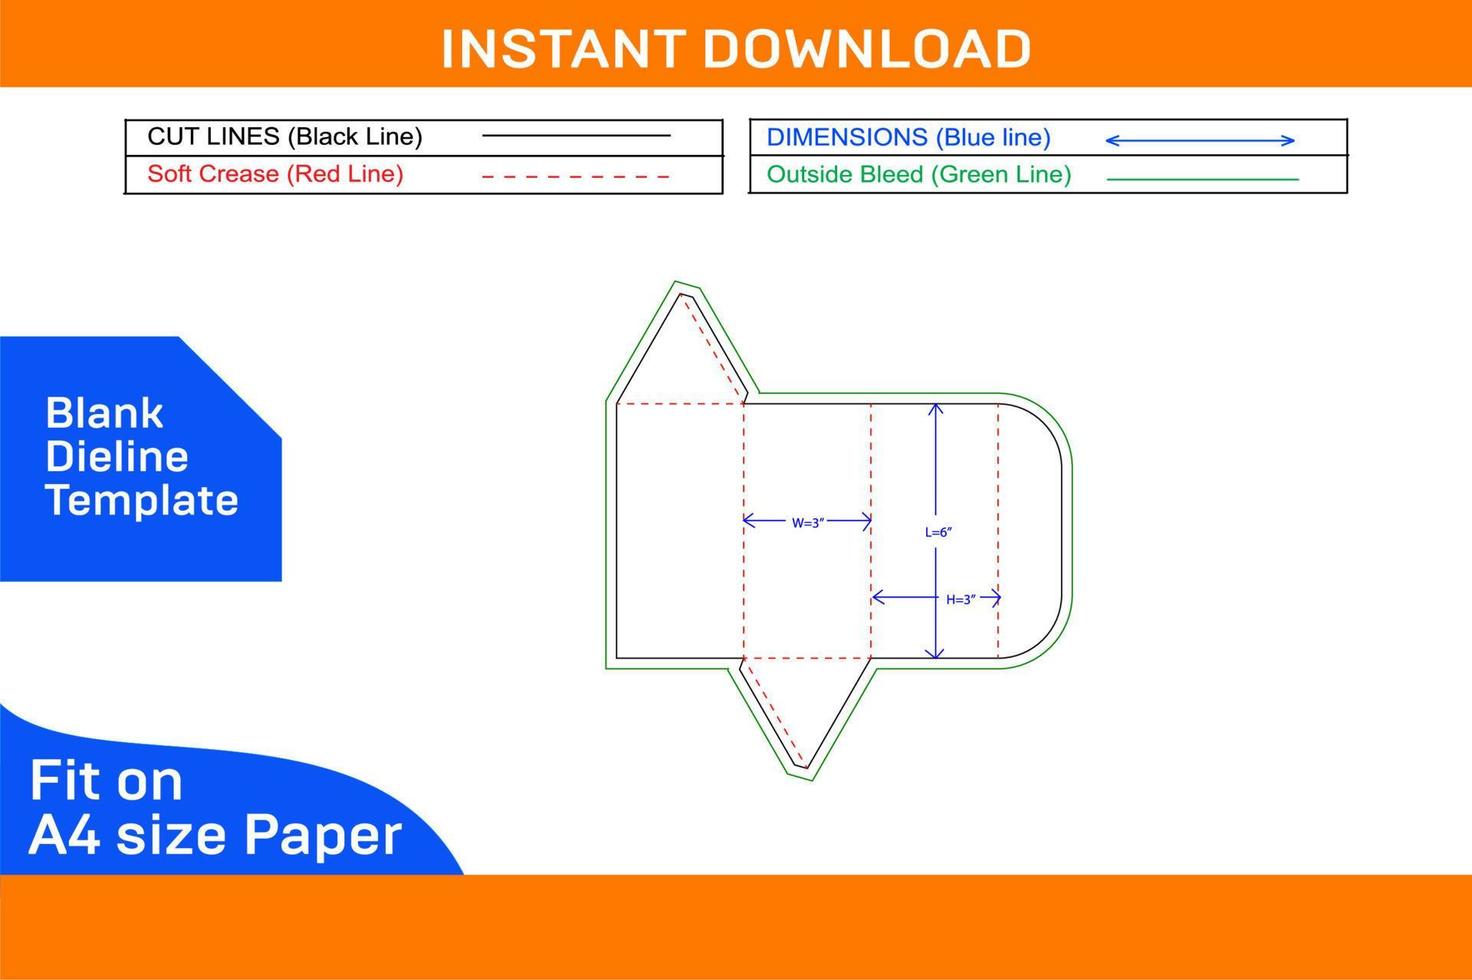 plegable papel gafas de sol caja dieline modelo y 3d vector archivo, editable y redimensionable blanco dieline modelo